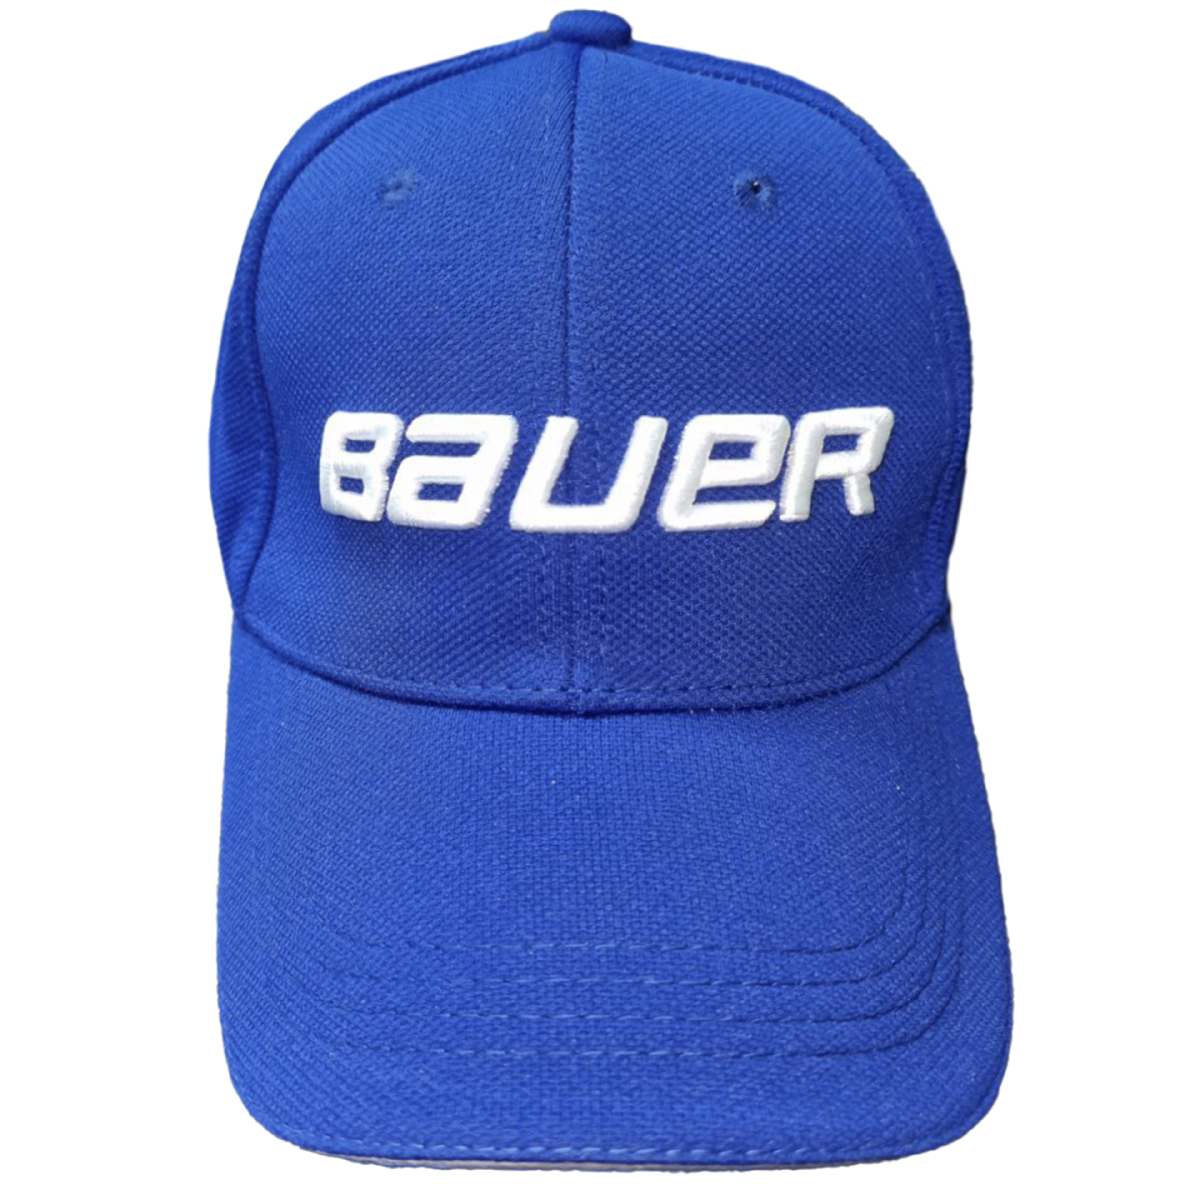 Бейсболка с логотипом Bauer синяя 57-58